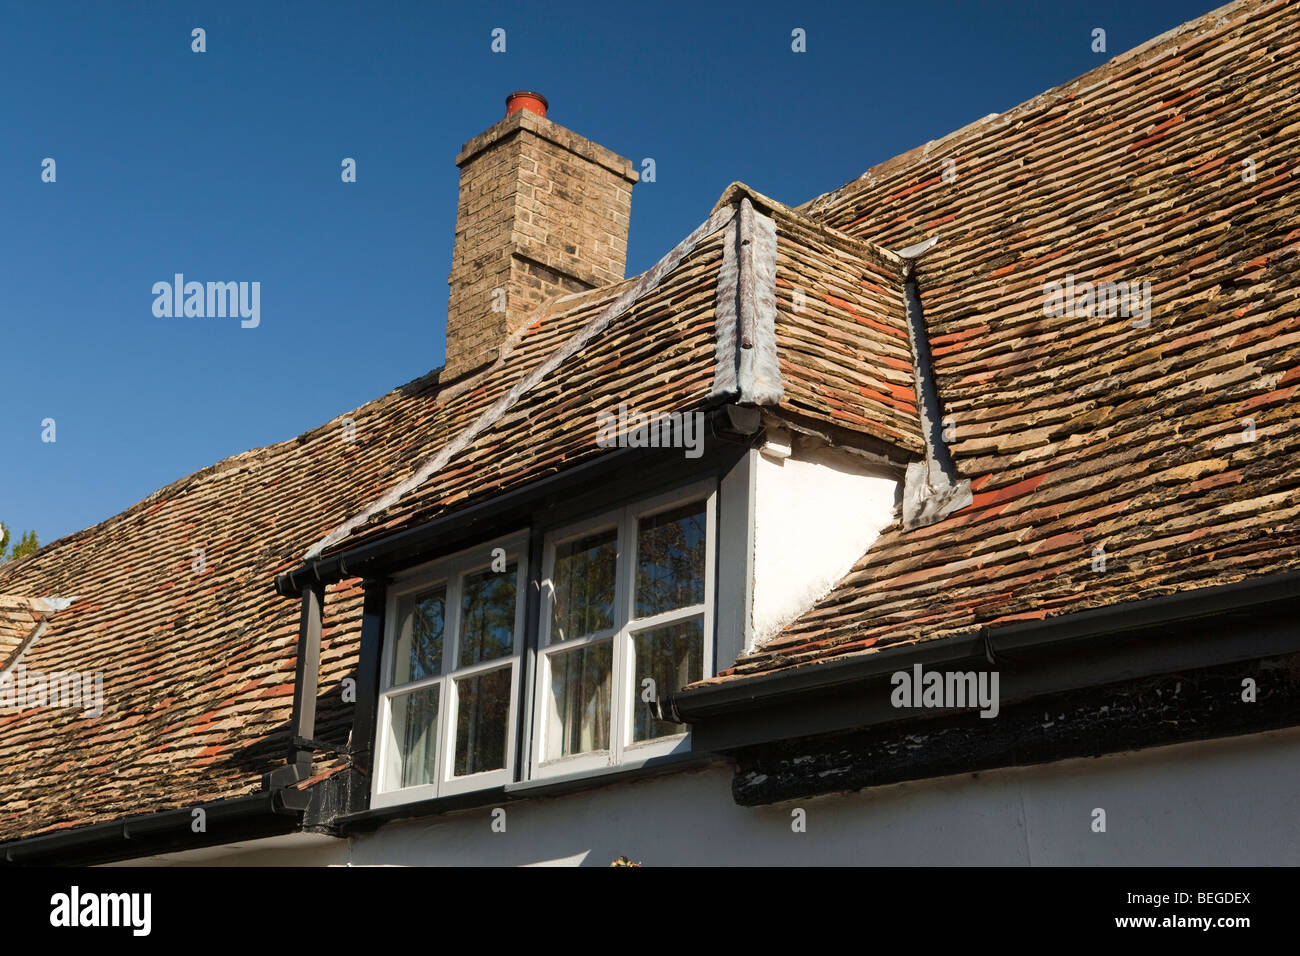 England, Cambridgeshire, Fenstanton, Dachfenster im Ferienhaus Dach hergestellt aus lokal hergestellten Fliesen Stockfoto